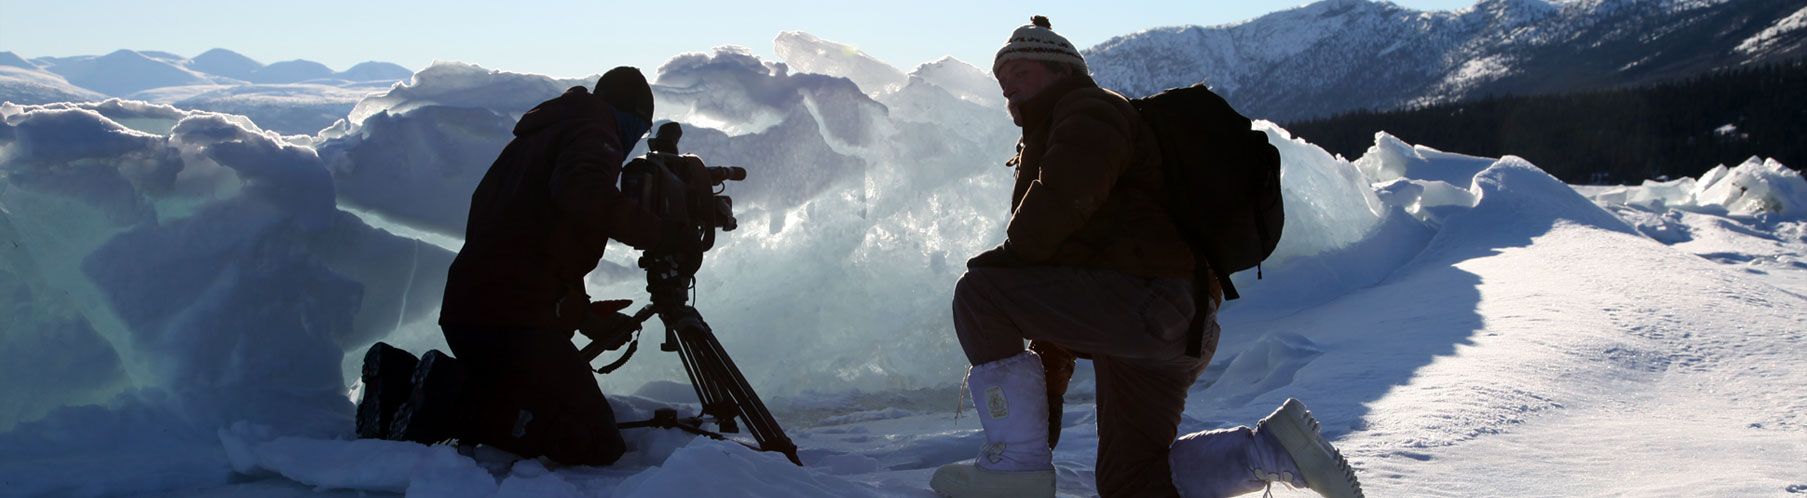 Filming Glacier Image